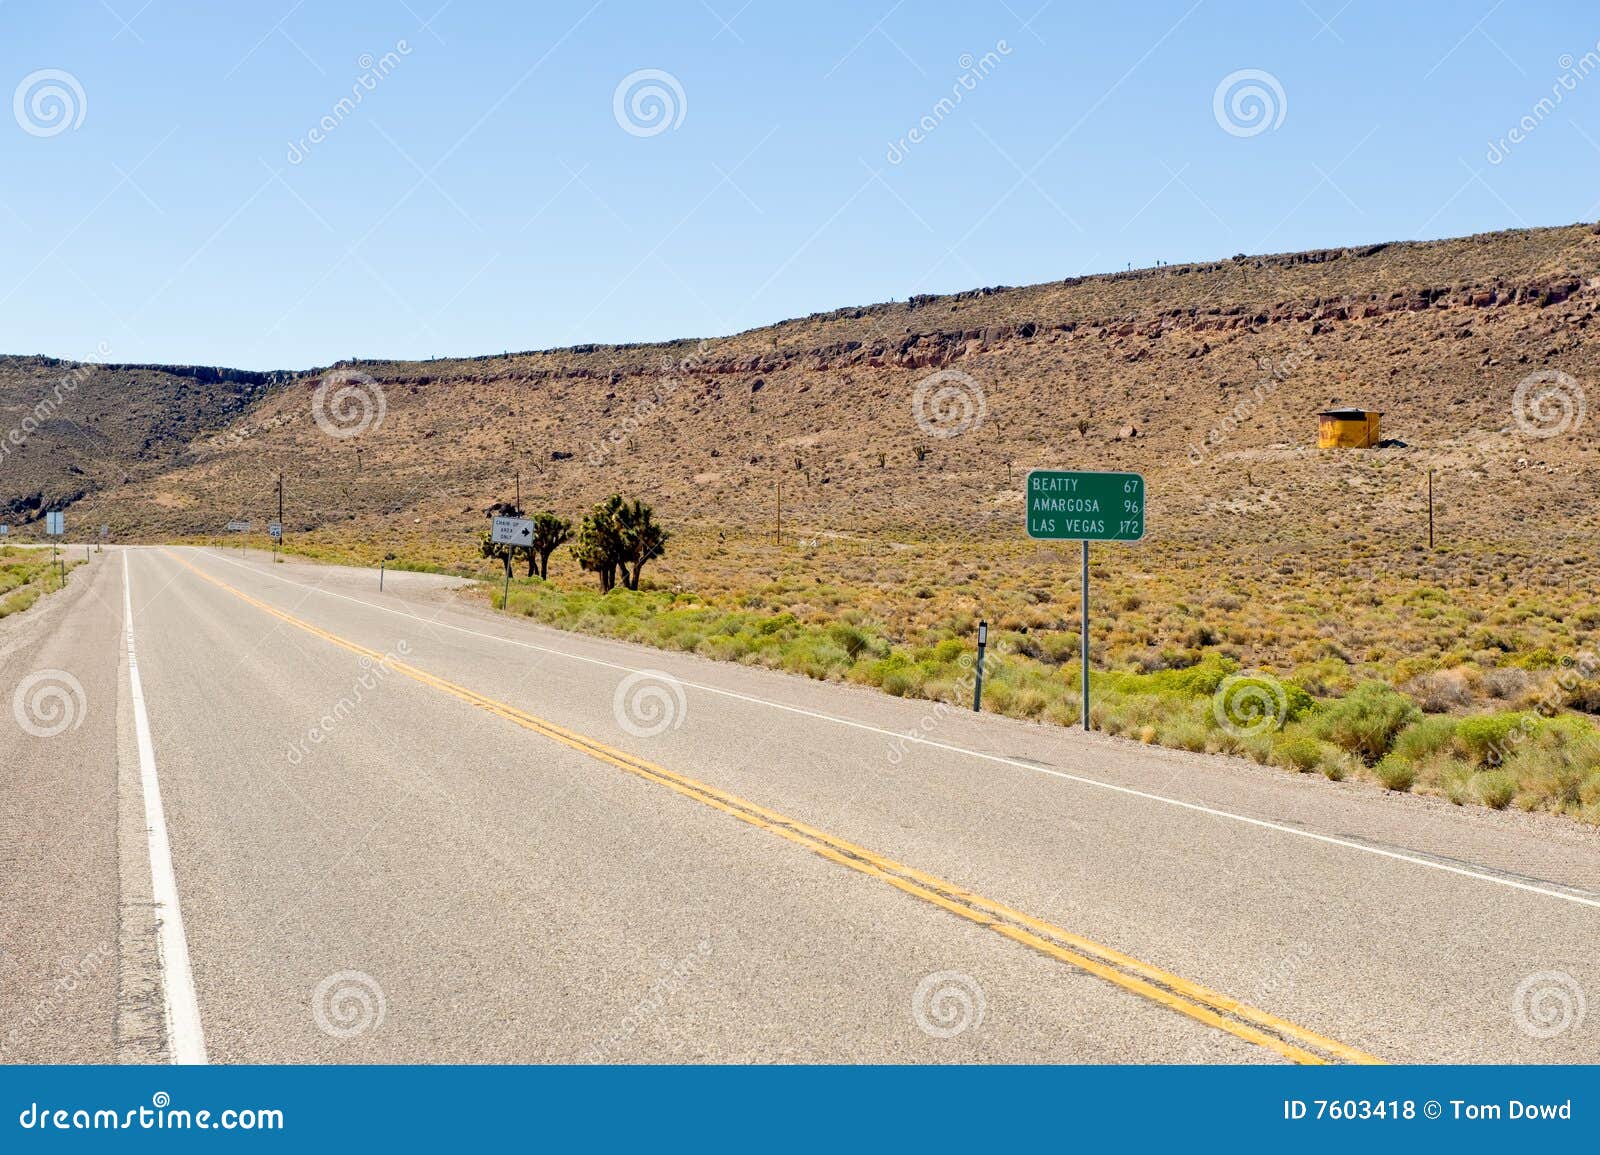 Nevada-Datenbahn. Ein Hintergrund mit einer Ansicht einer Datenbahn nahe Goldfield Nevada Wüste nahe Tonopah in USA.